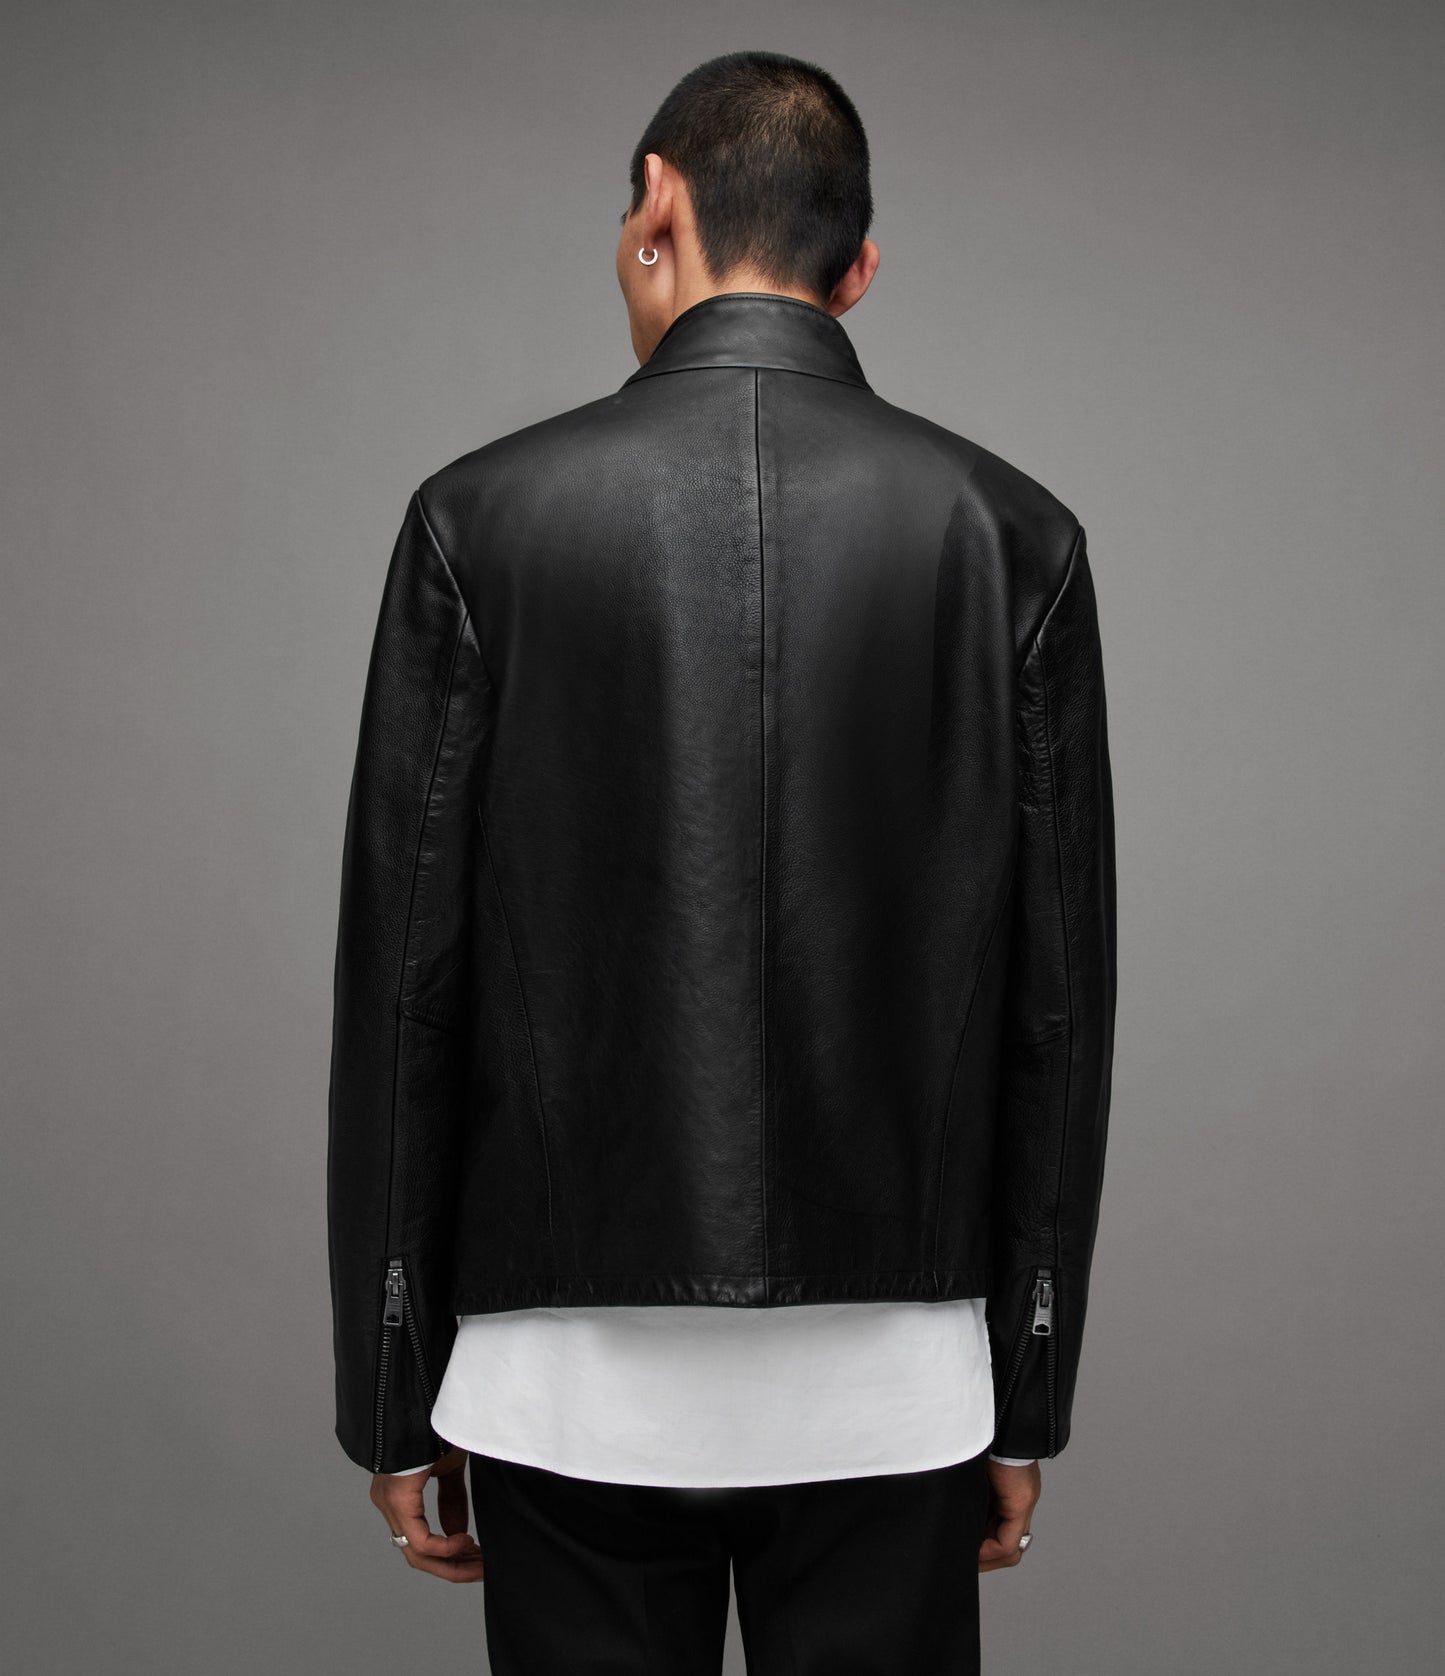 Trost Biker Leather Jacket